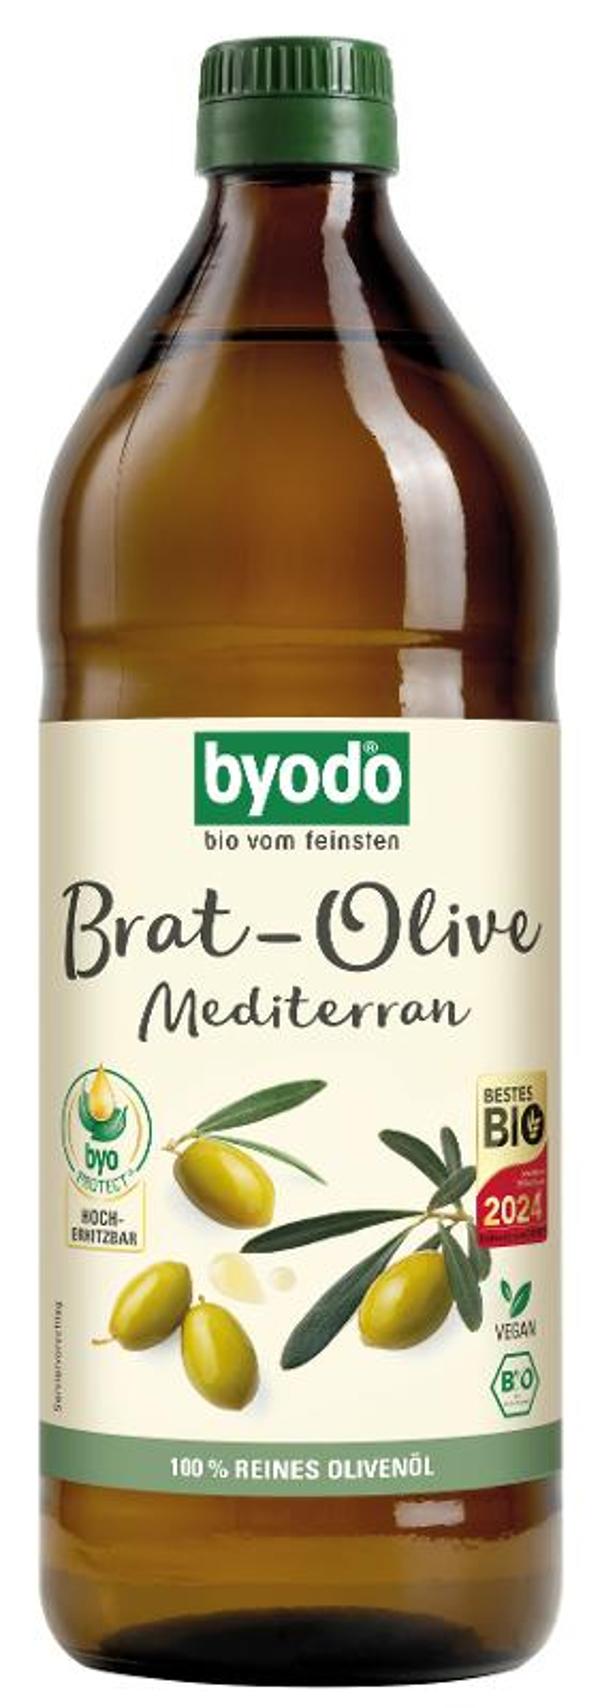 Produktfoto zu Byodo Brat-Olive 750ml